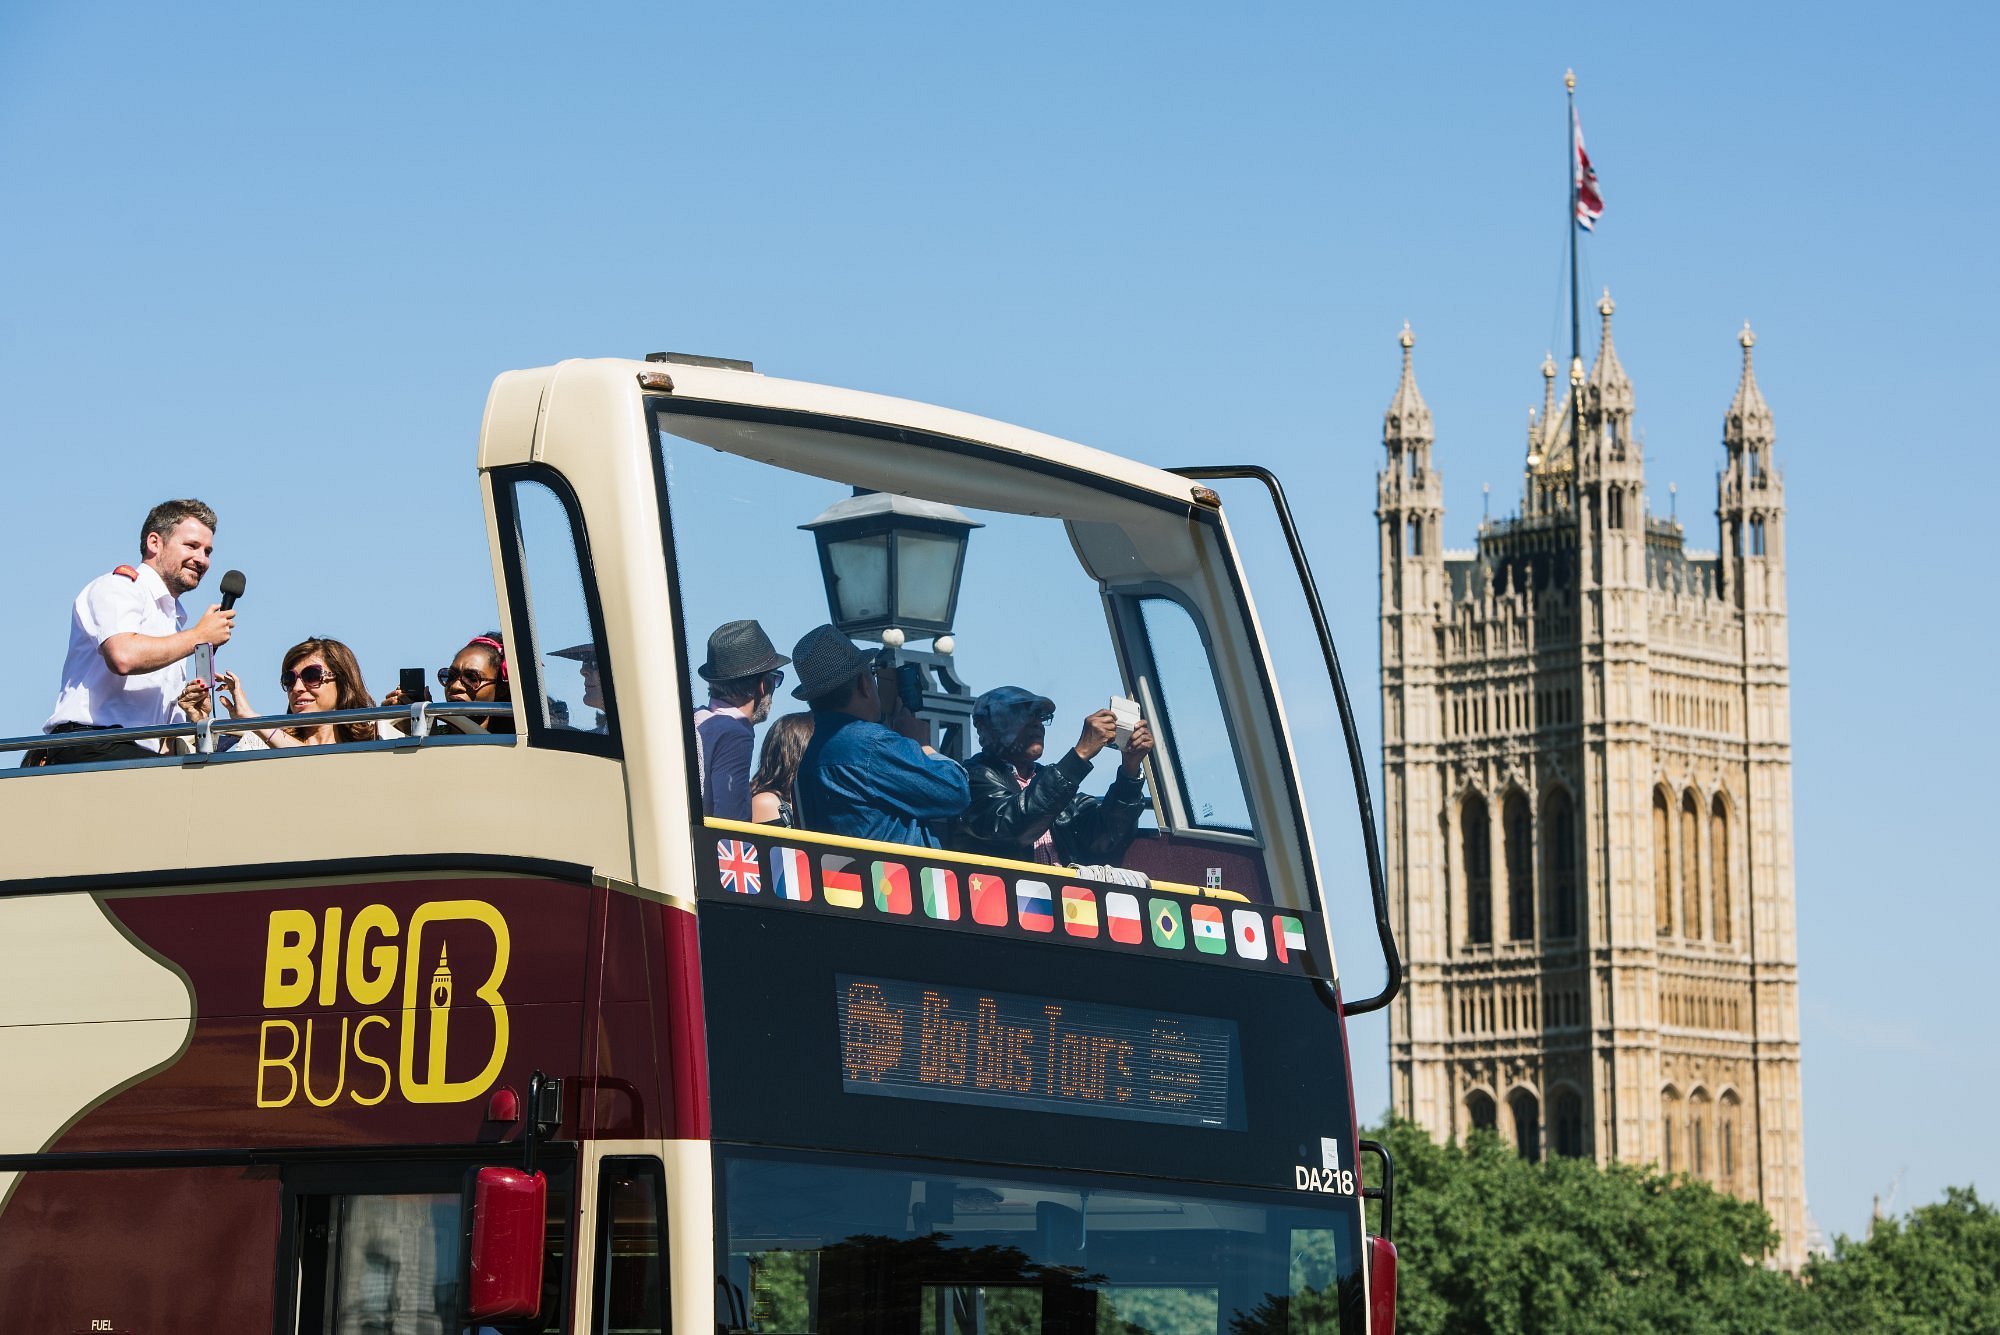 big city bus tours london